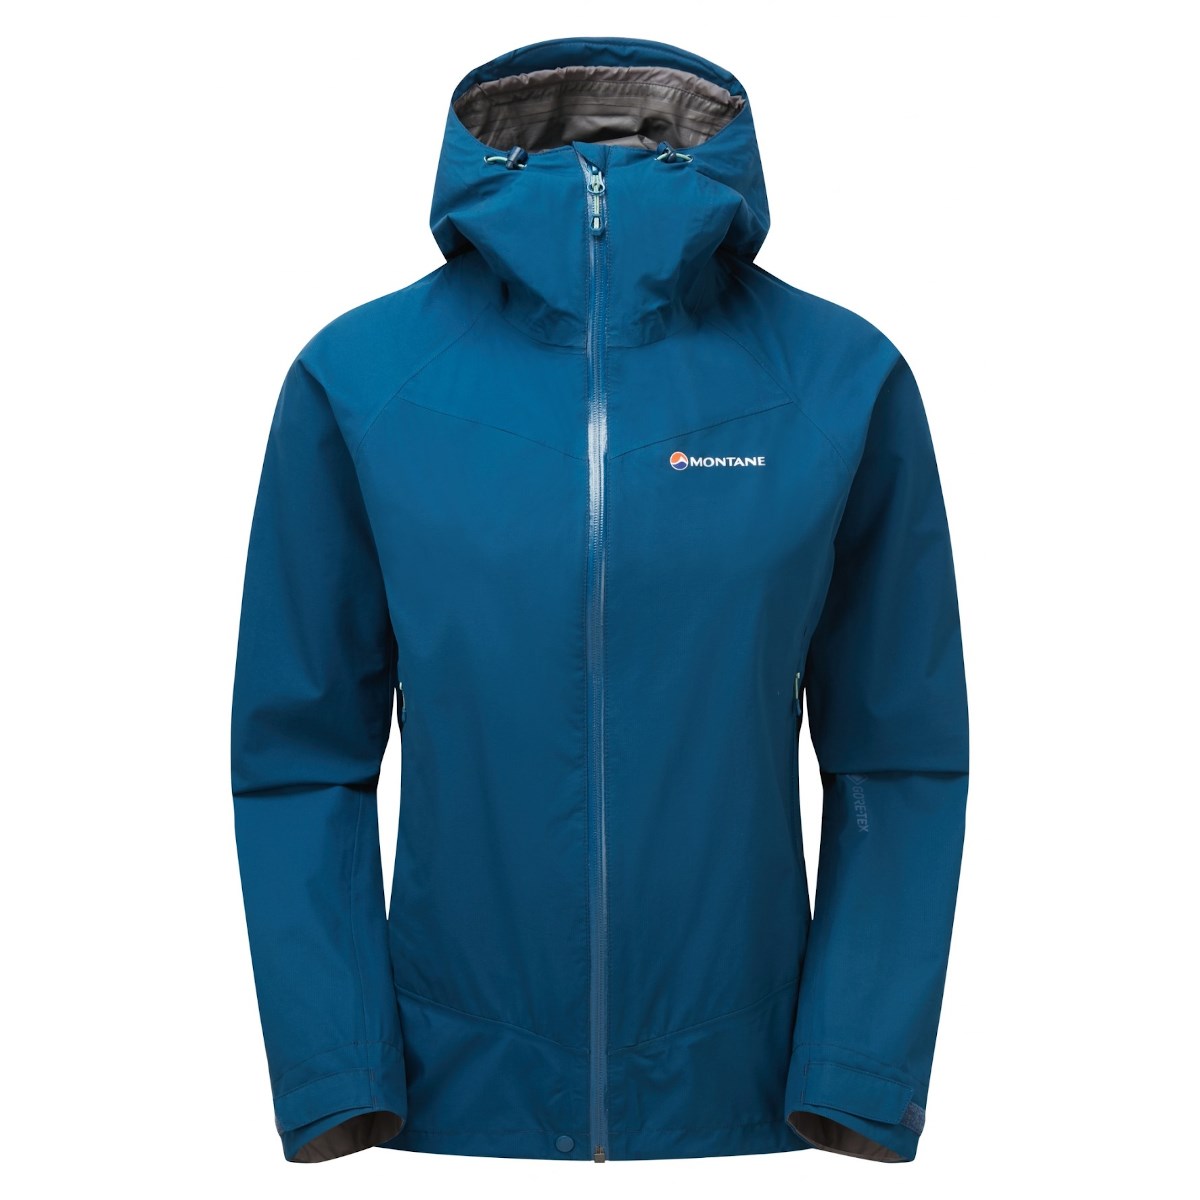 Bunda Montane Pac Plus Jacket W narwhal blue Montane 10025399 L-11